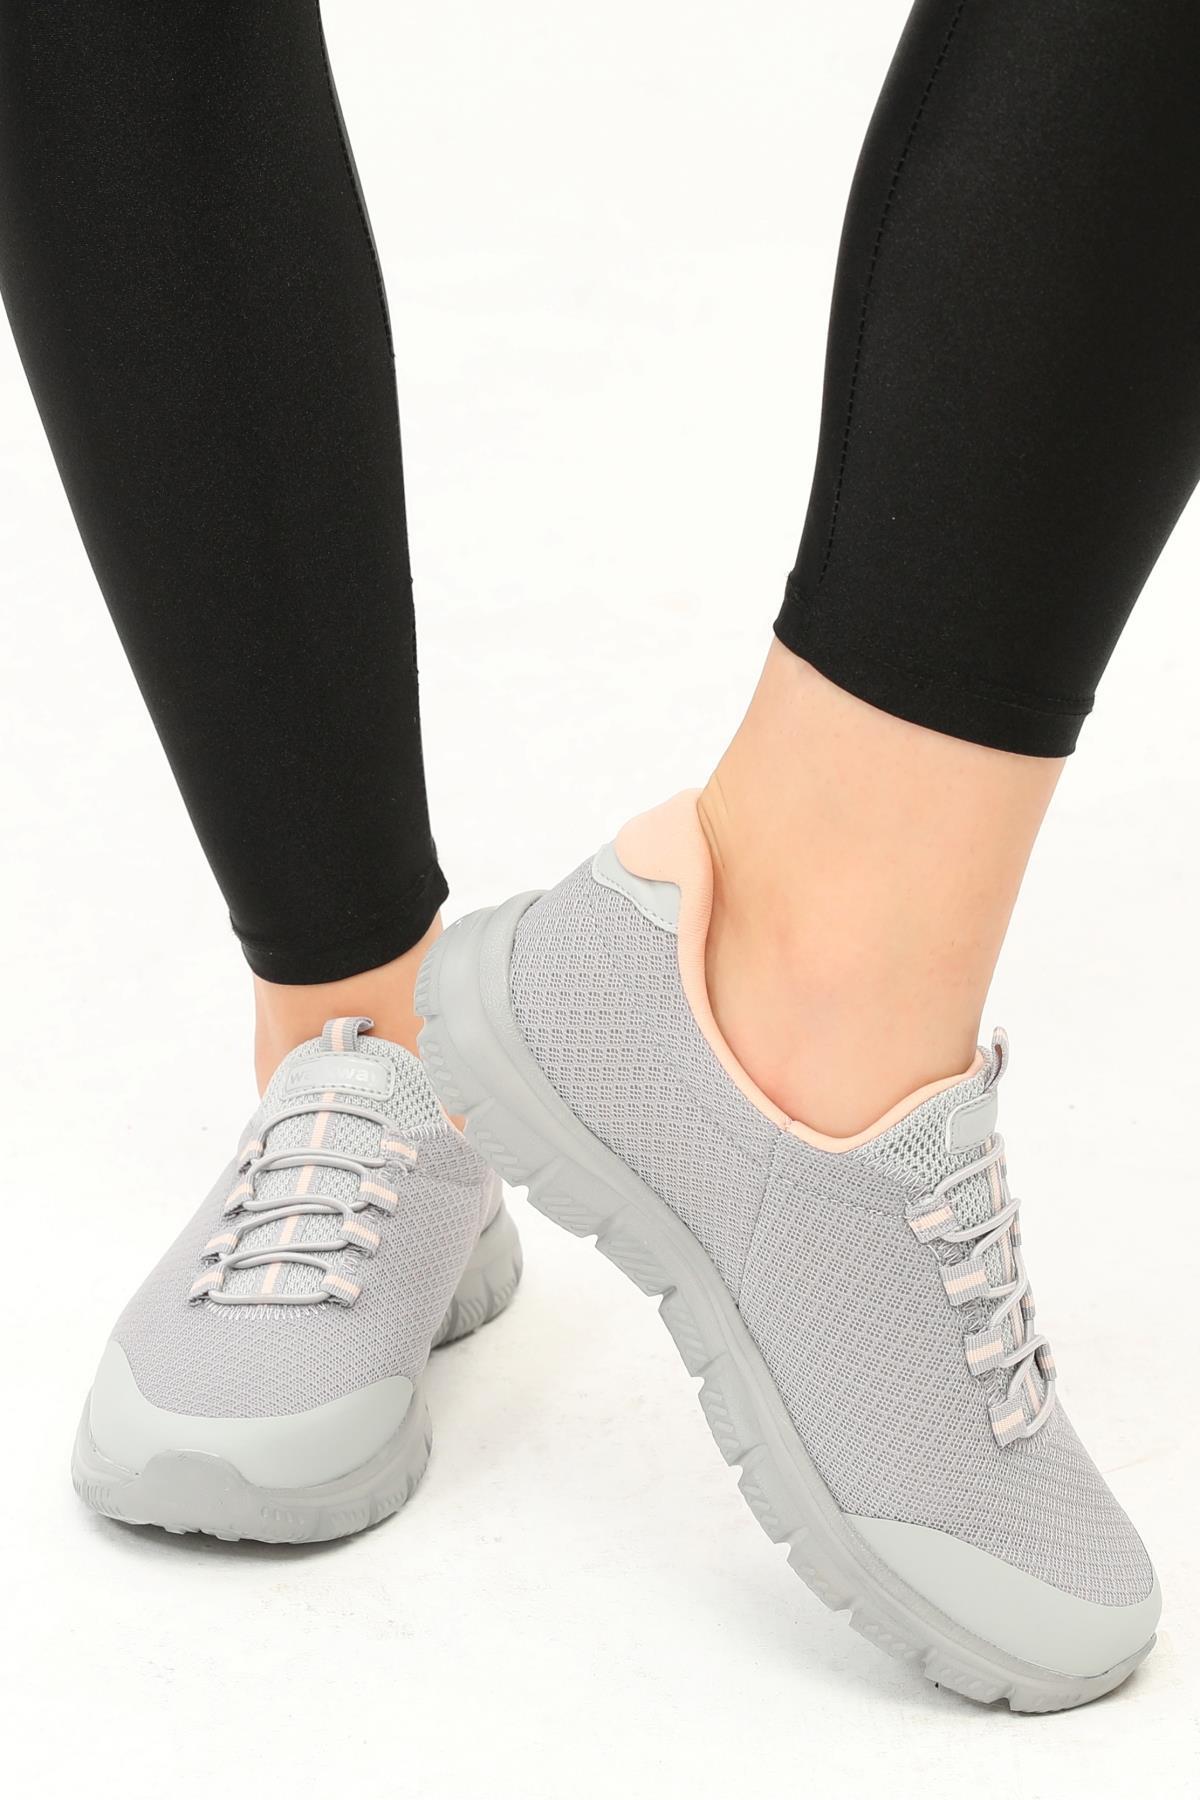 Walkway Flexible Buz-Pembe Comfort Fileli Kadın Yürüyüş Ayakkabısı - Ayakmod